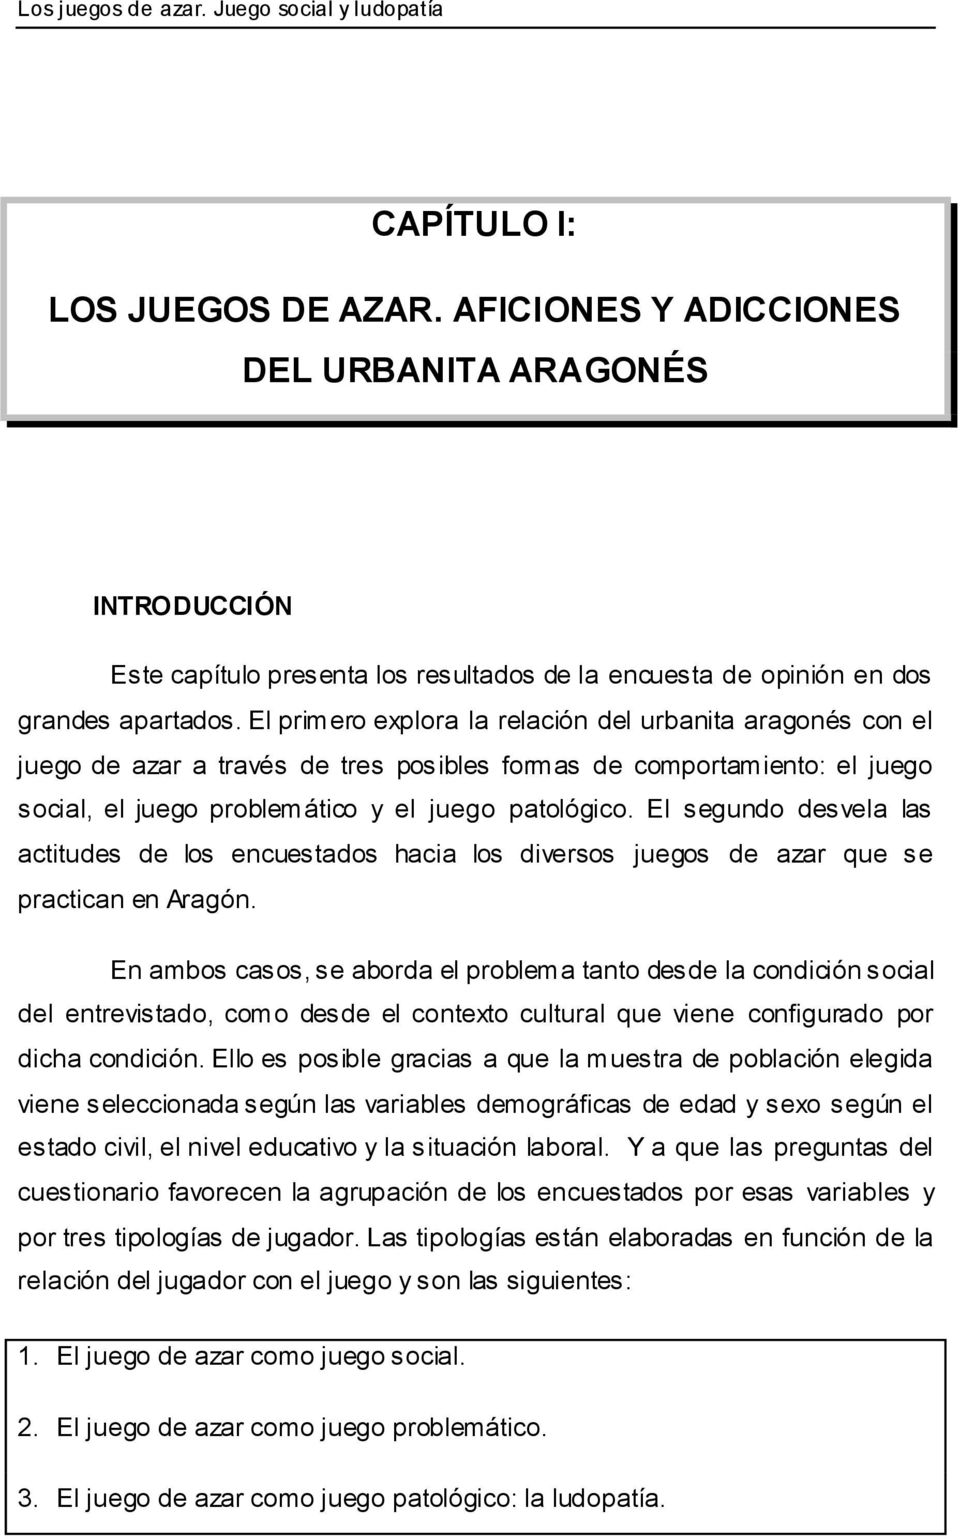 El primero explora la relación del urbanita aragonés con el juego de azar a través de tres posibles formas de comportamiento: el juego social, el juego problemático y el juego patológico.